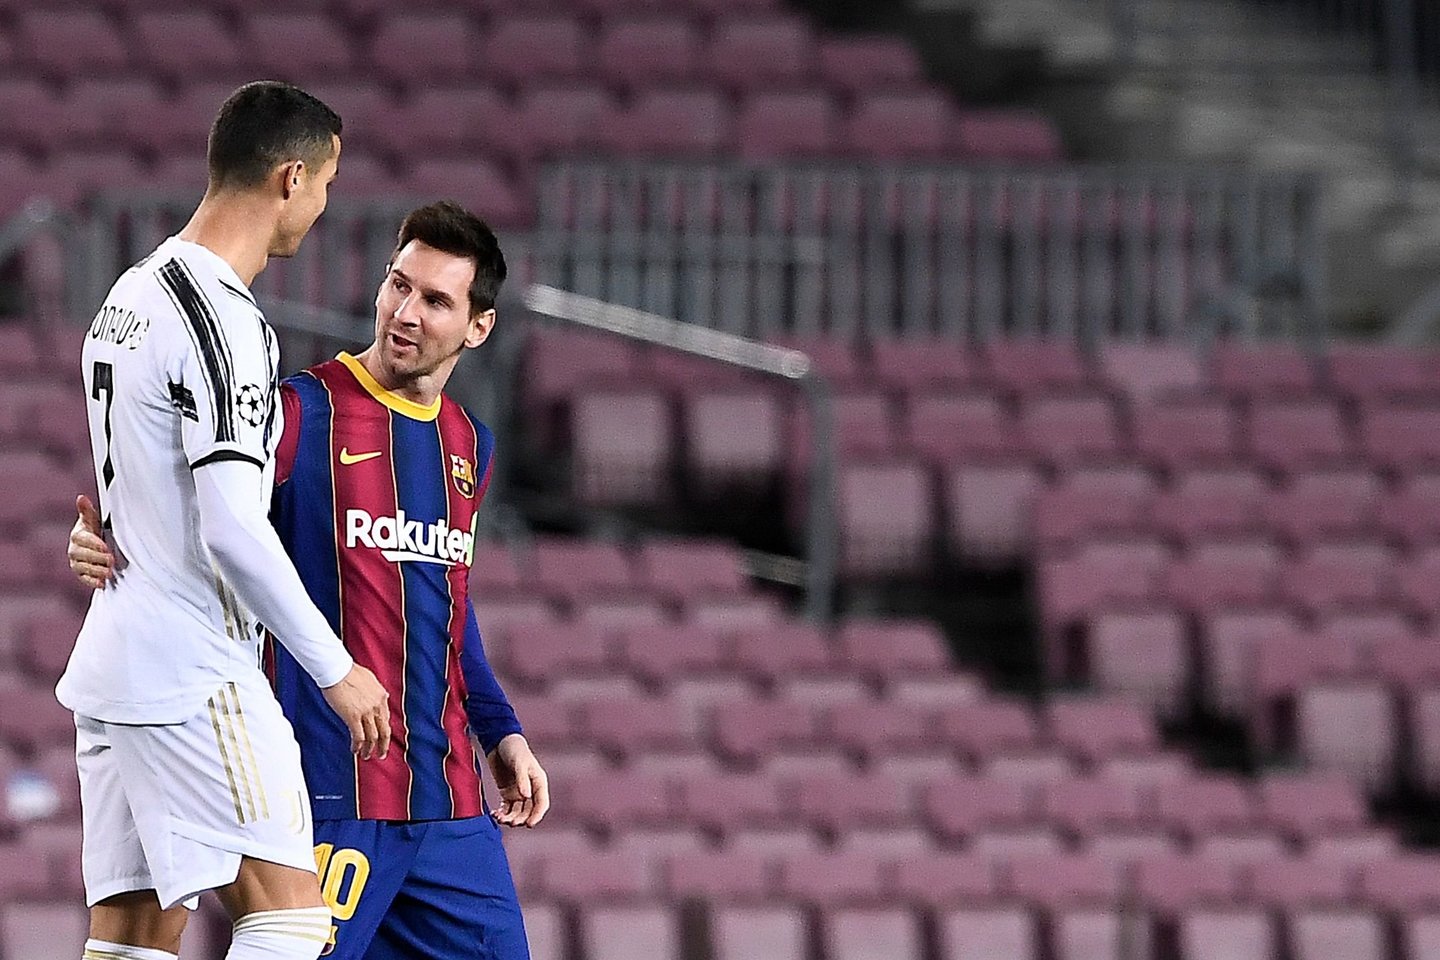  C.Ronaldo ir L.Messi vienas prieš kitą žaidė 2020 m. gruodį.<br> AFP/Scanpix nuotr.